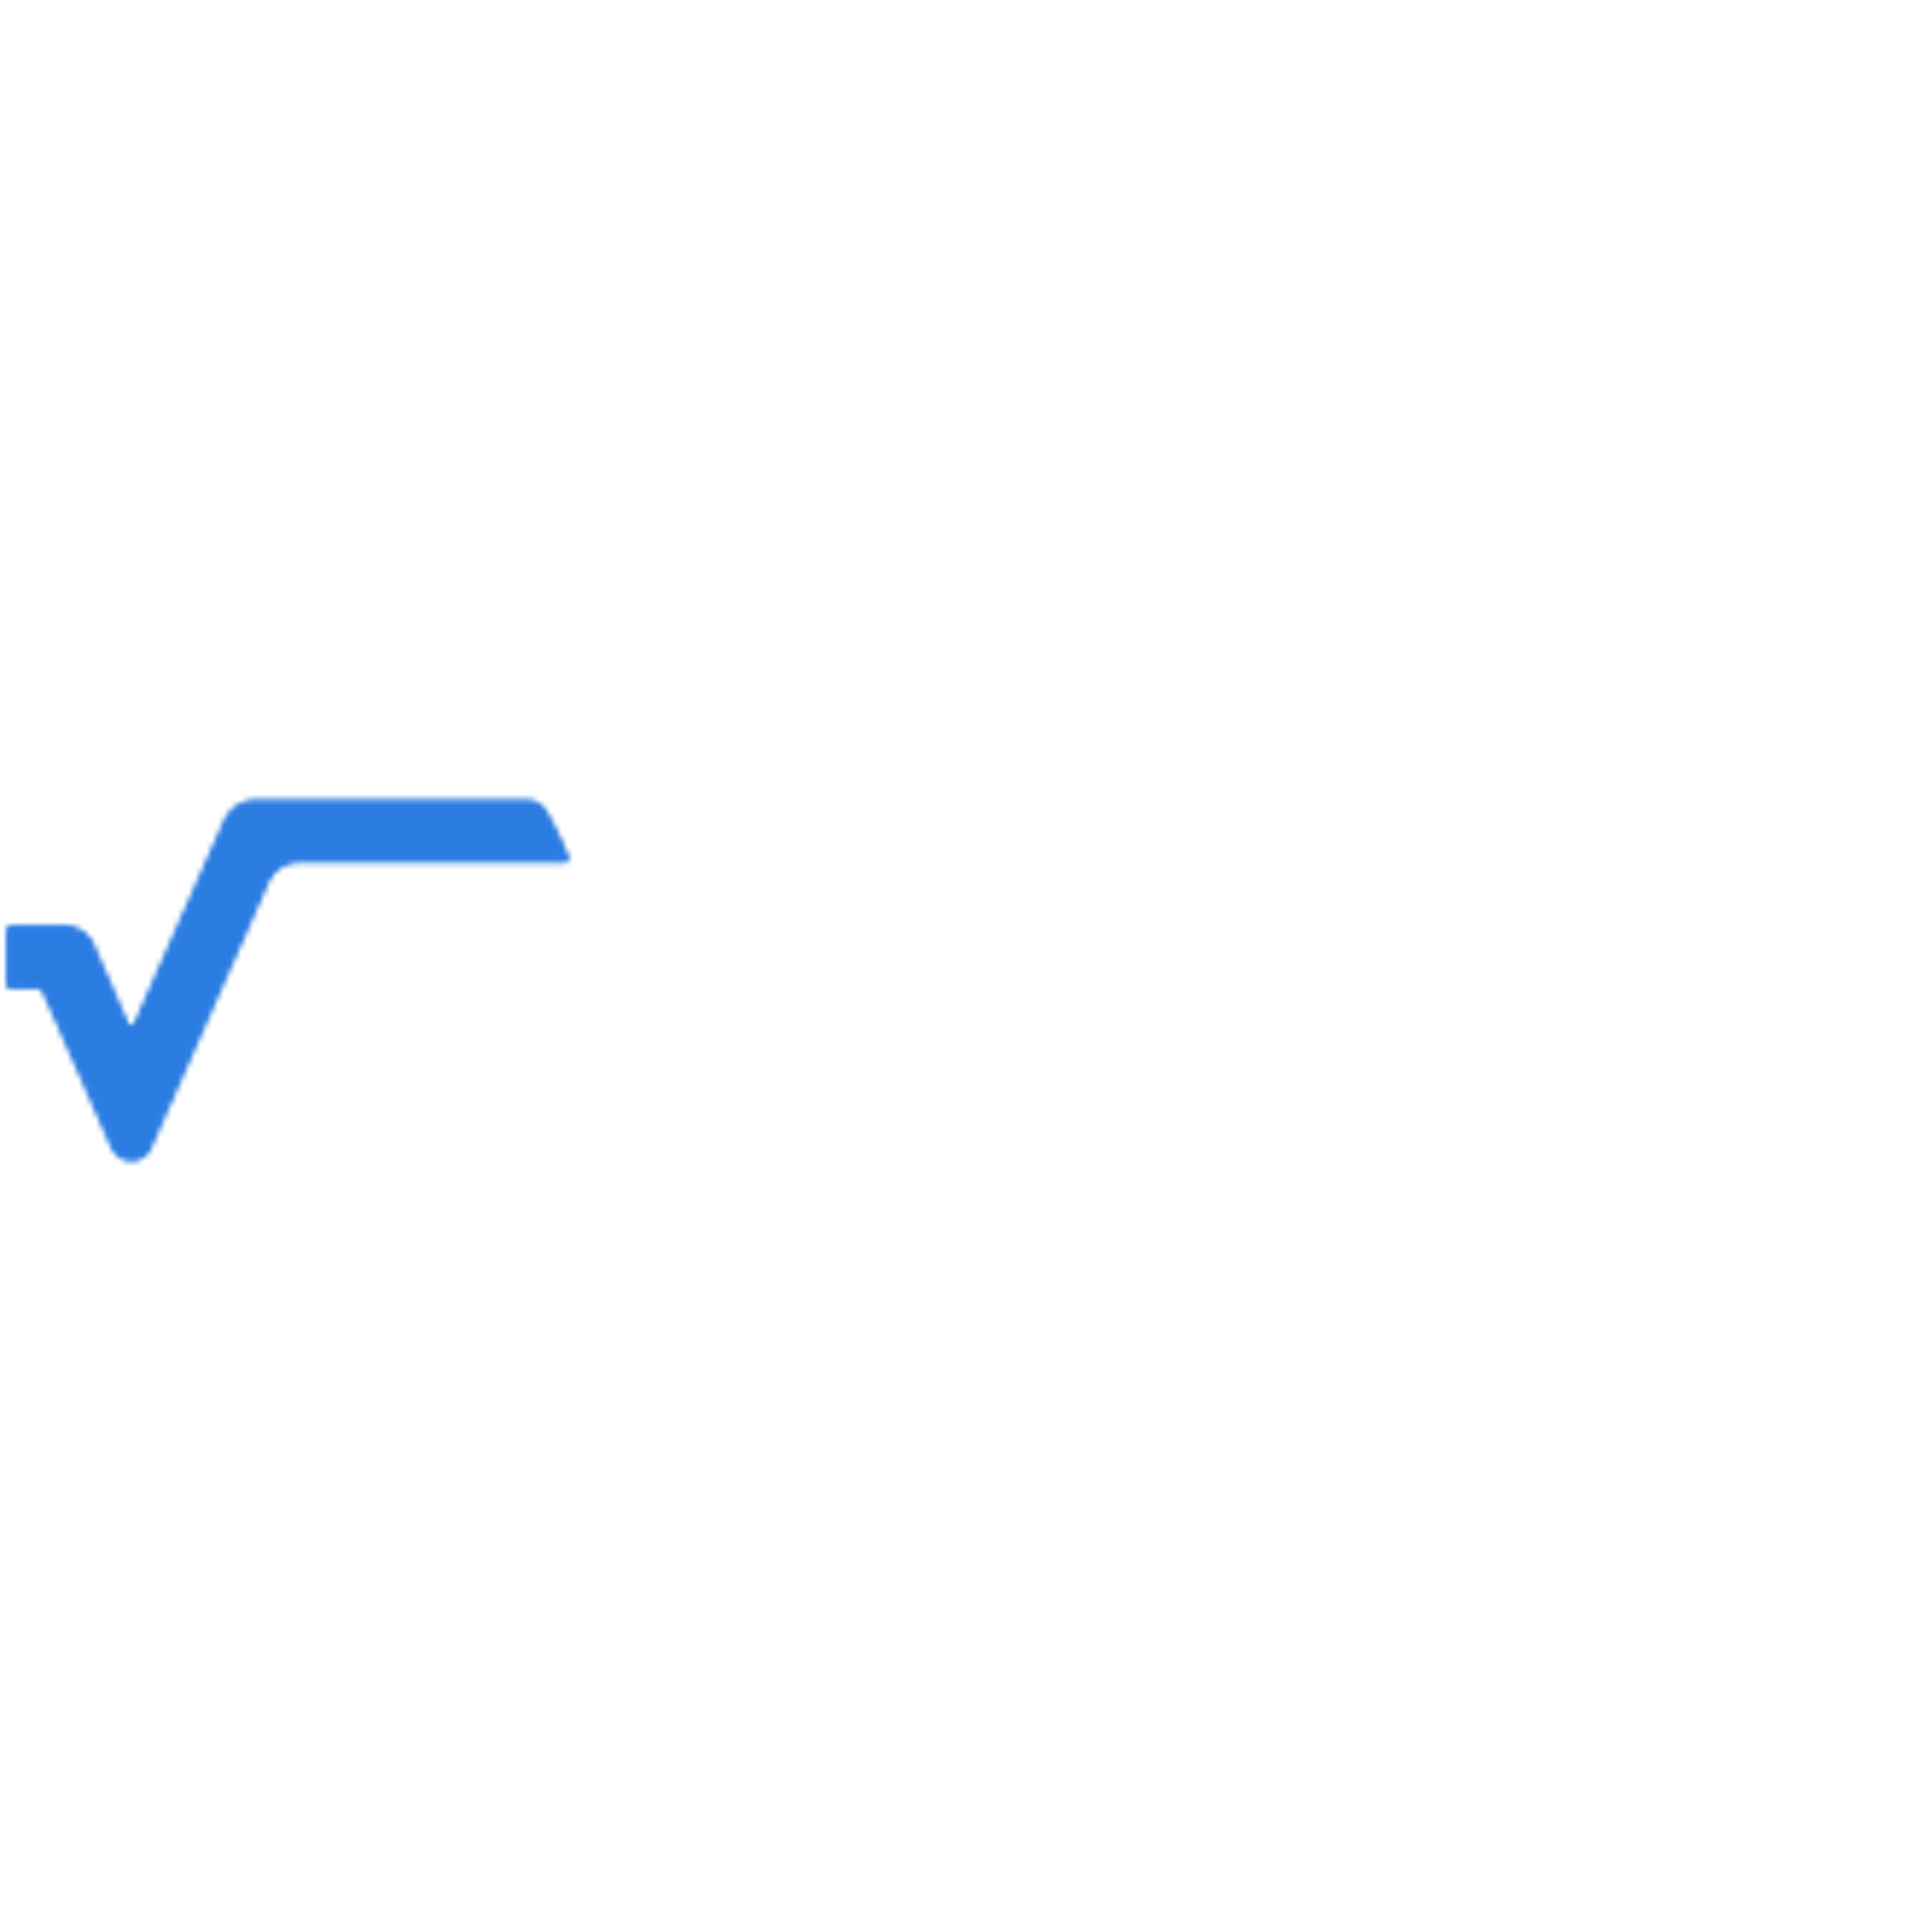 Verisk Logo